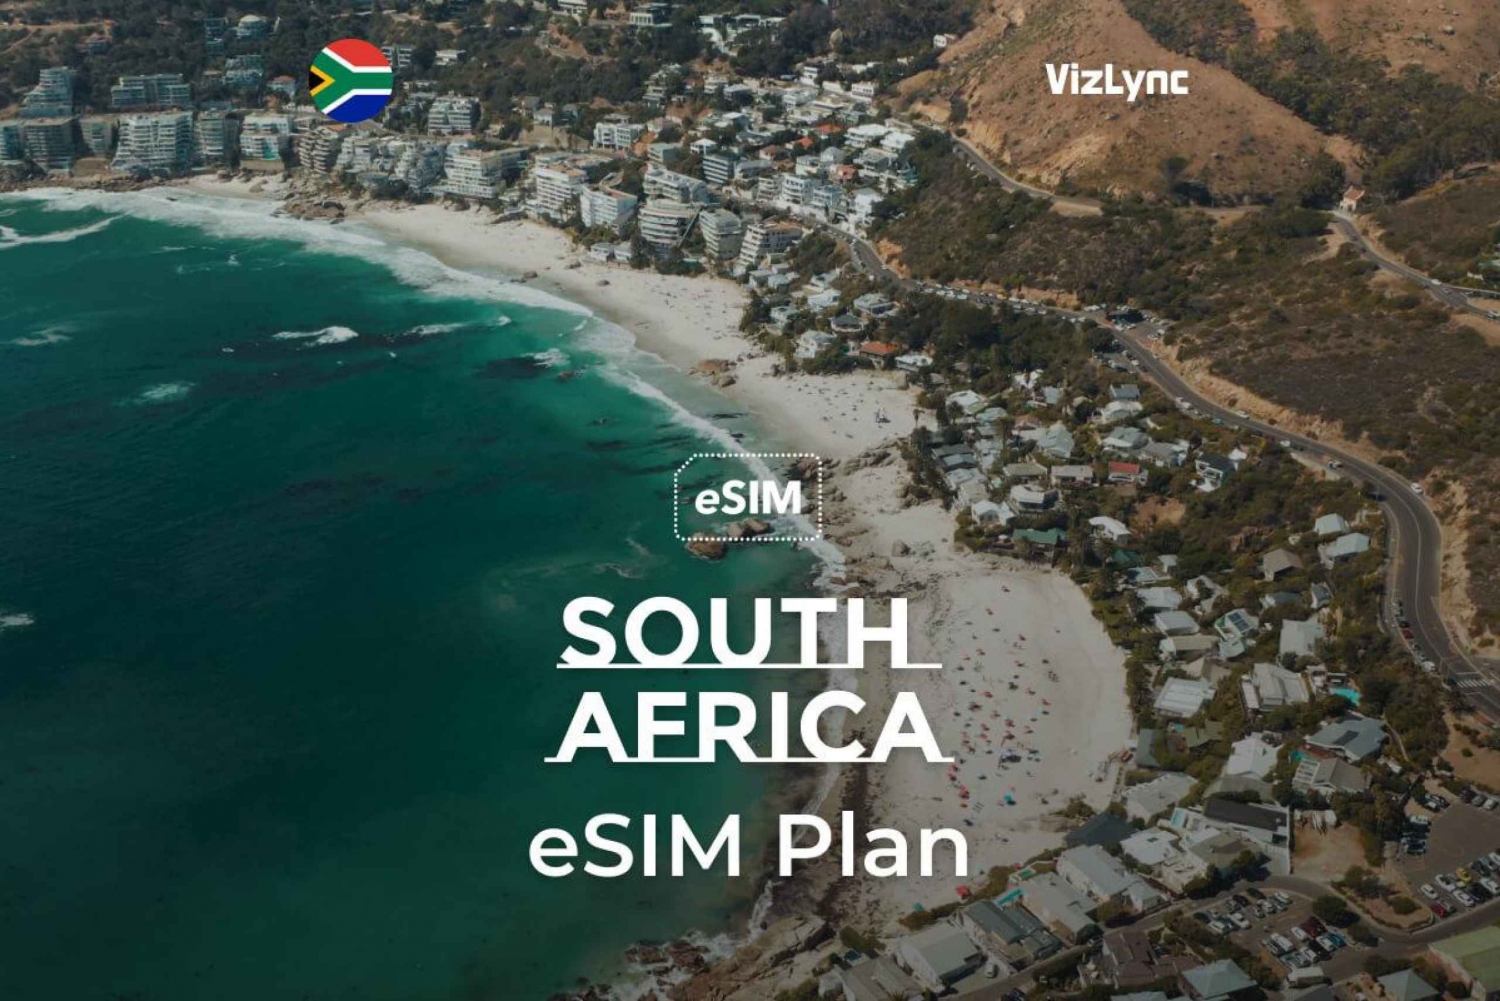 Pozostań w kontakcie w RPA dzięki kartom eSIM obsługującym tylko transmisję danych.